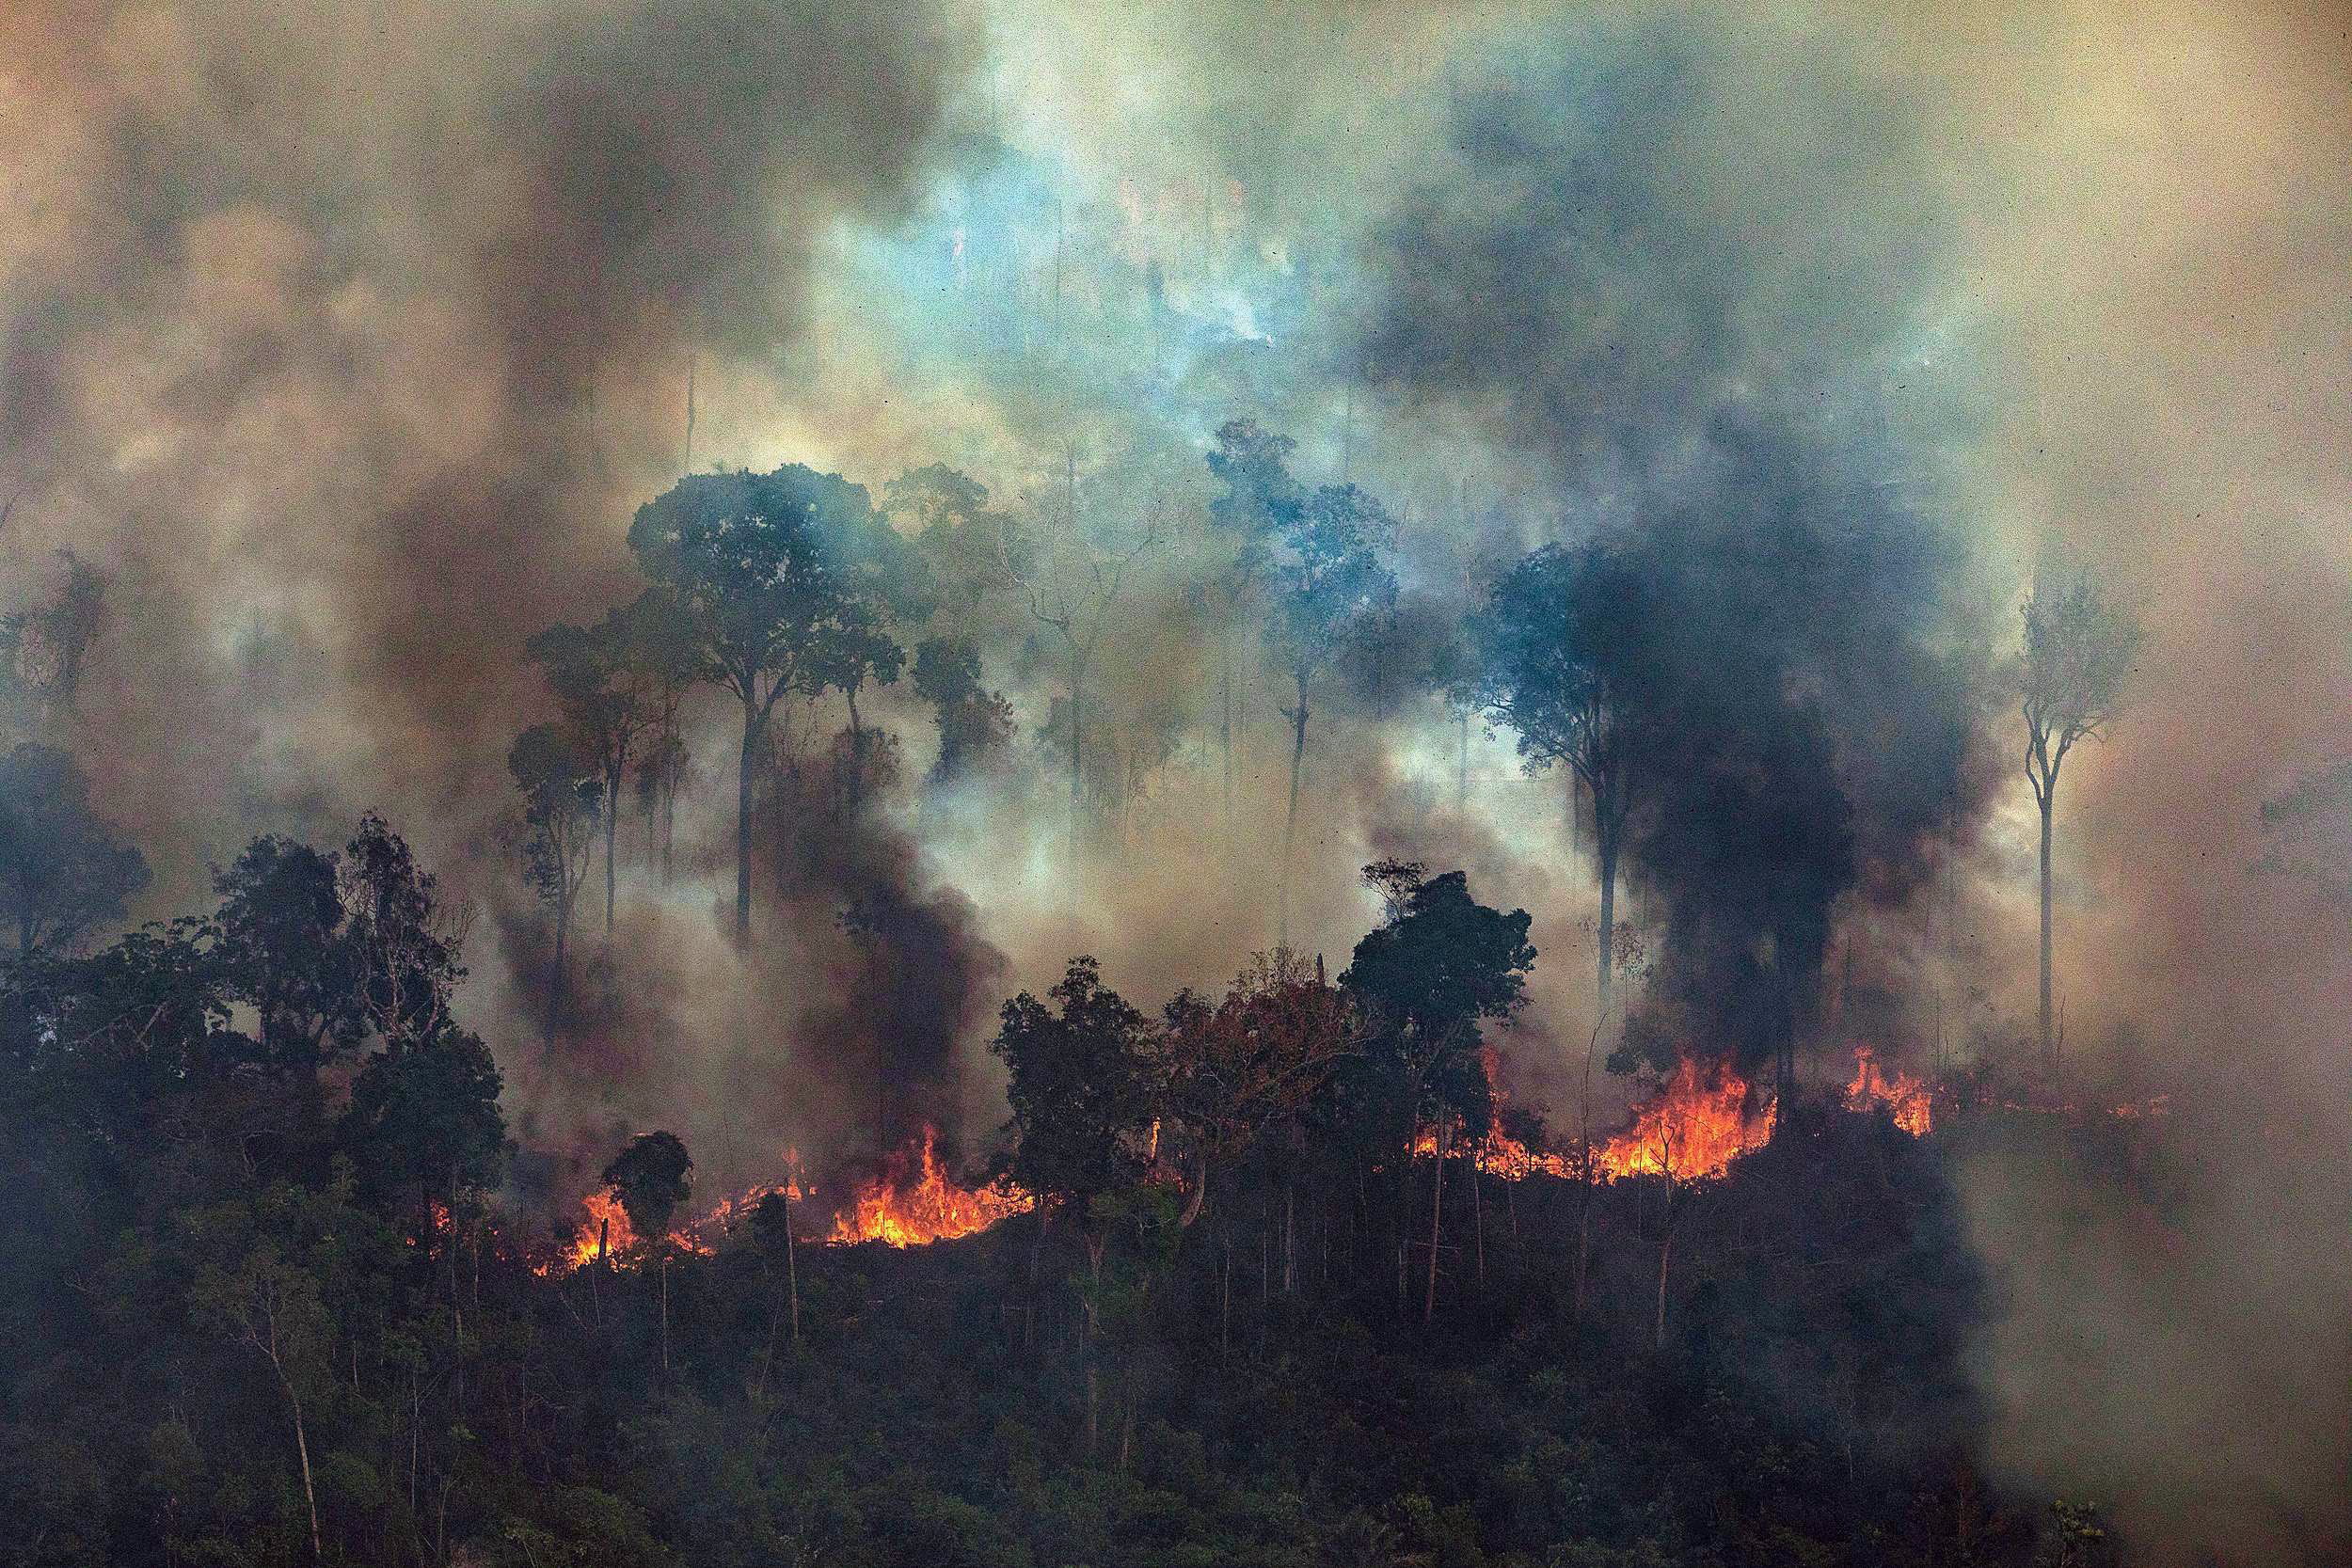 Никога преди в амазонската джунгла не са горели толкова много пожари. Броят им в момента е над 2500. Едва днес правителството на Бразилия заповяда на армията да се включи в гасенето на огъня.